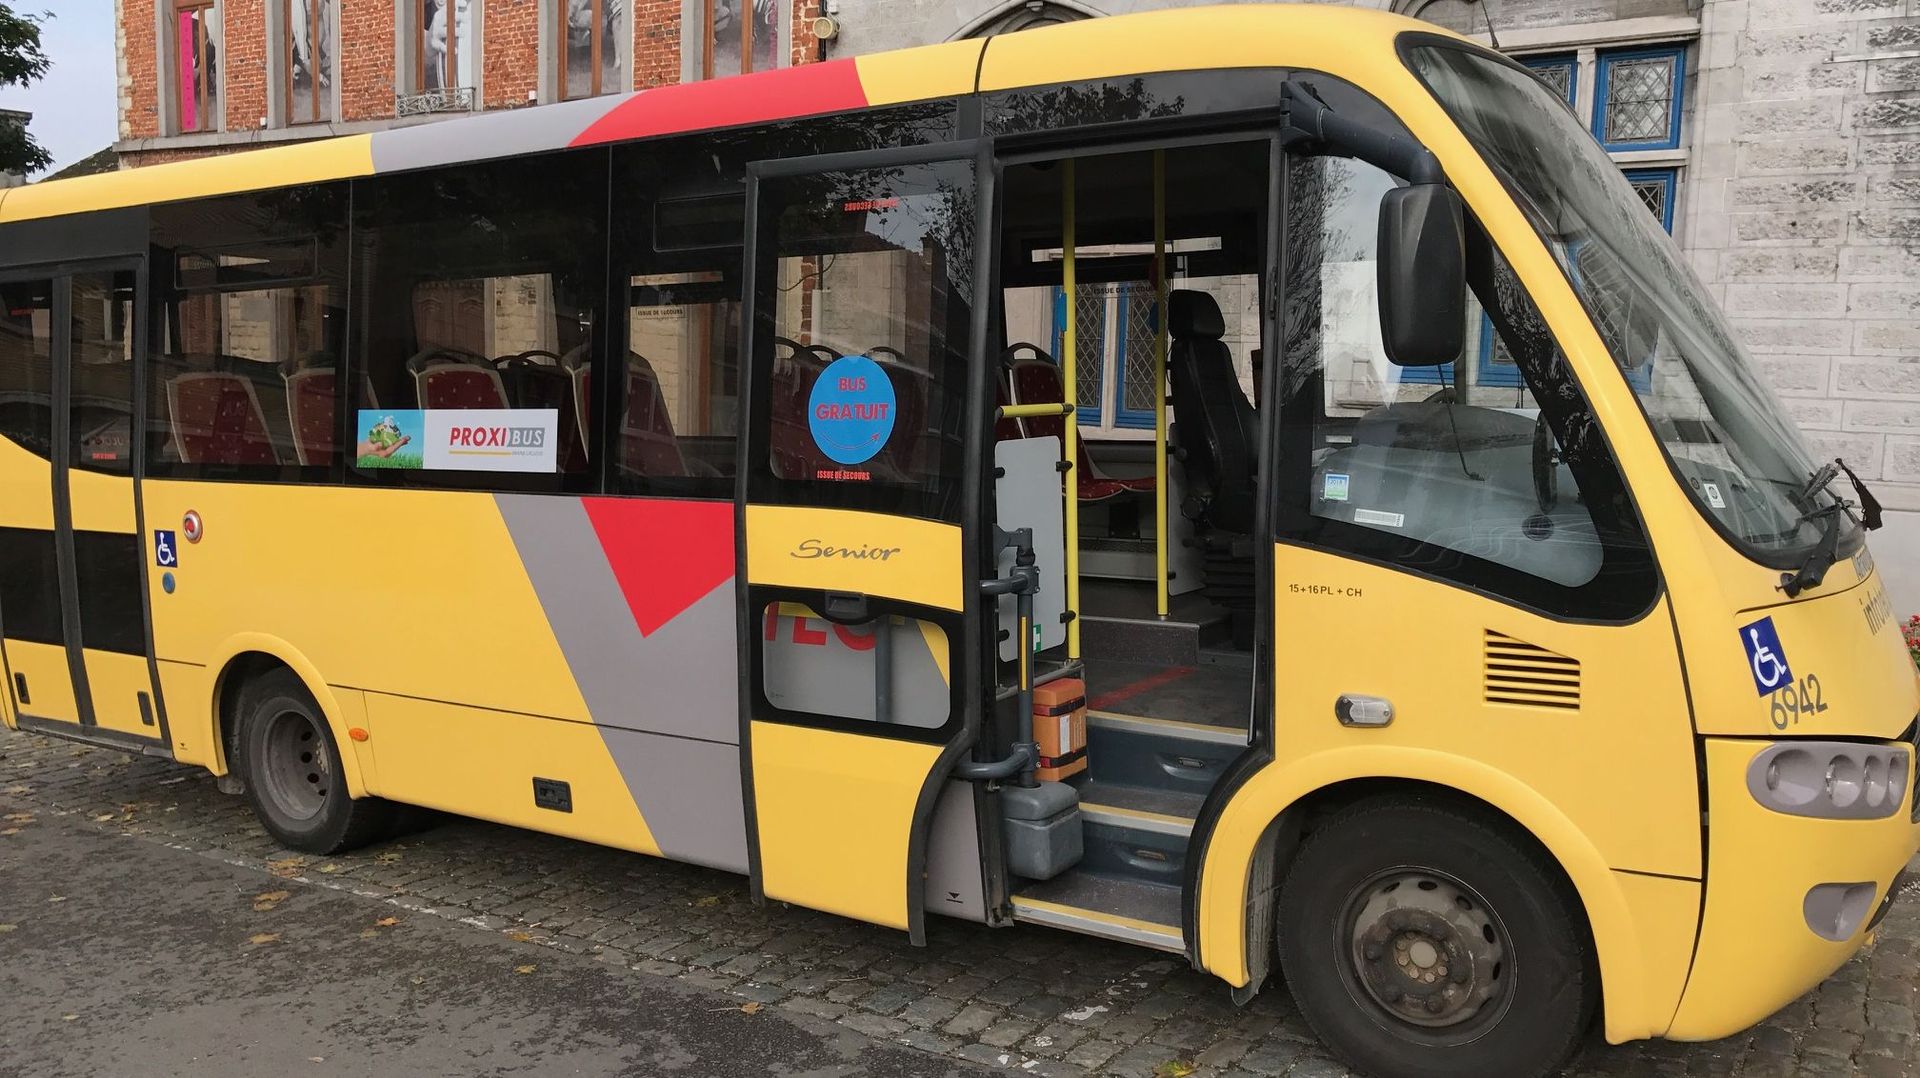 La capacité actuelle du Proxibus de Braine-l'Alleud est de 15 places assises et 16 places debout. Il est aménagé pour pouvoir accueillir des passagers PMR. L'an prochain, de nouveaux véhicules Proxibus, plus grands, devraient pouvoir embarquer quelque 55 